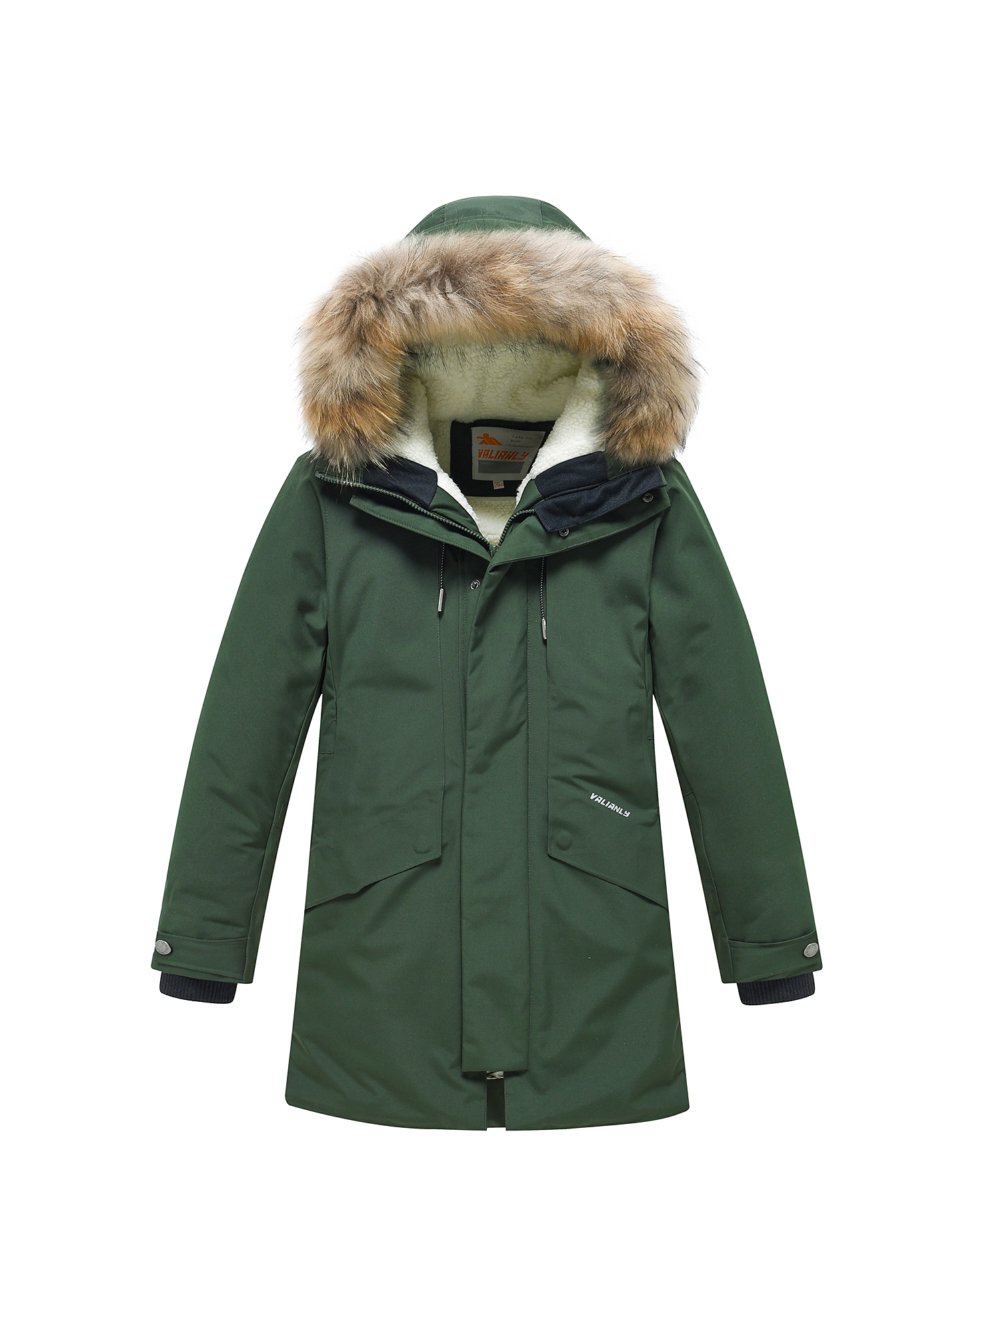 Купить куртку парку для мальчика оптом от производителя недорого в Москве 9343Kh 1